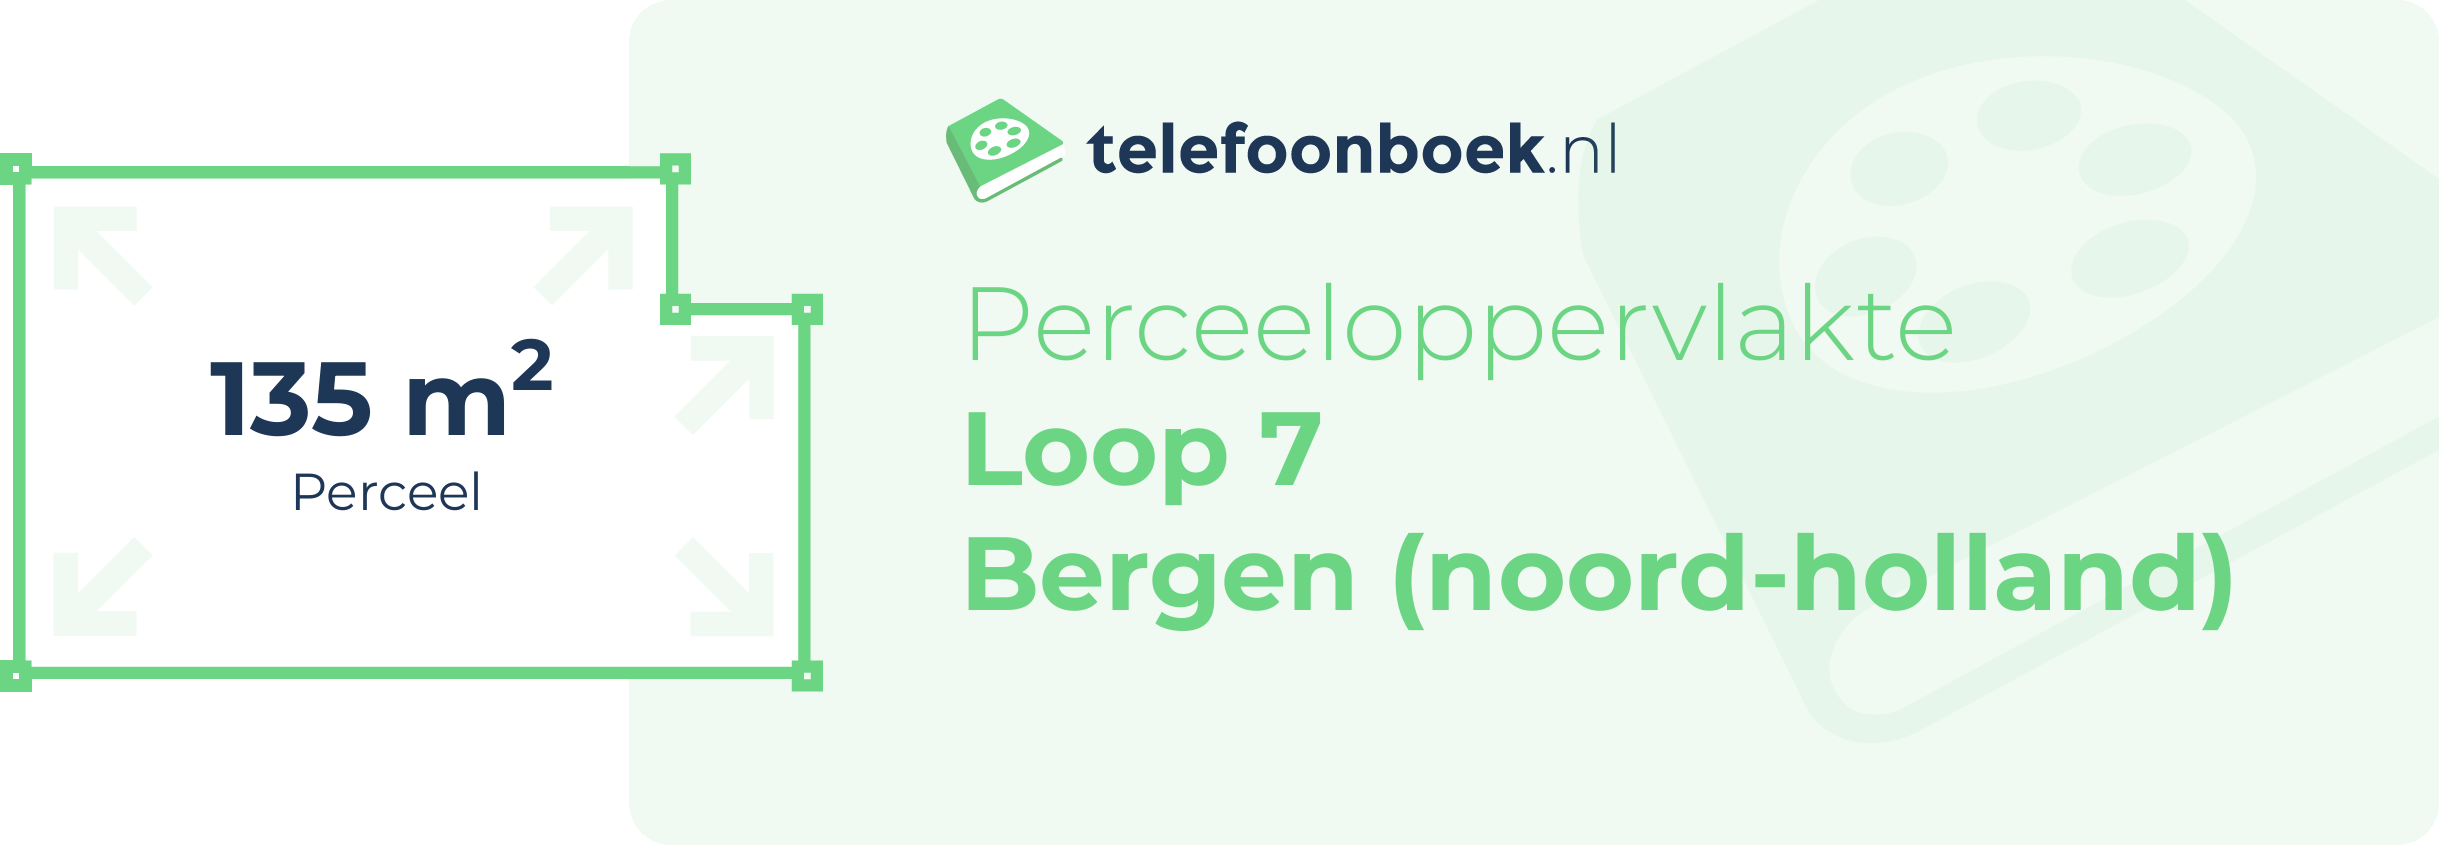 Perceeloppervlakte Loop 7 Bergen (Noord-Holland)